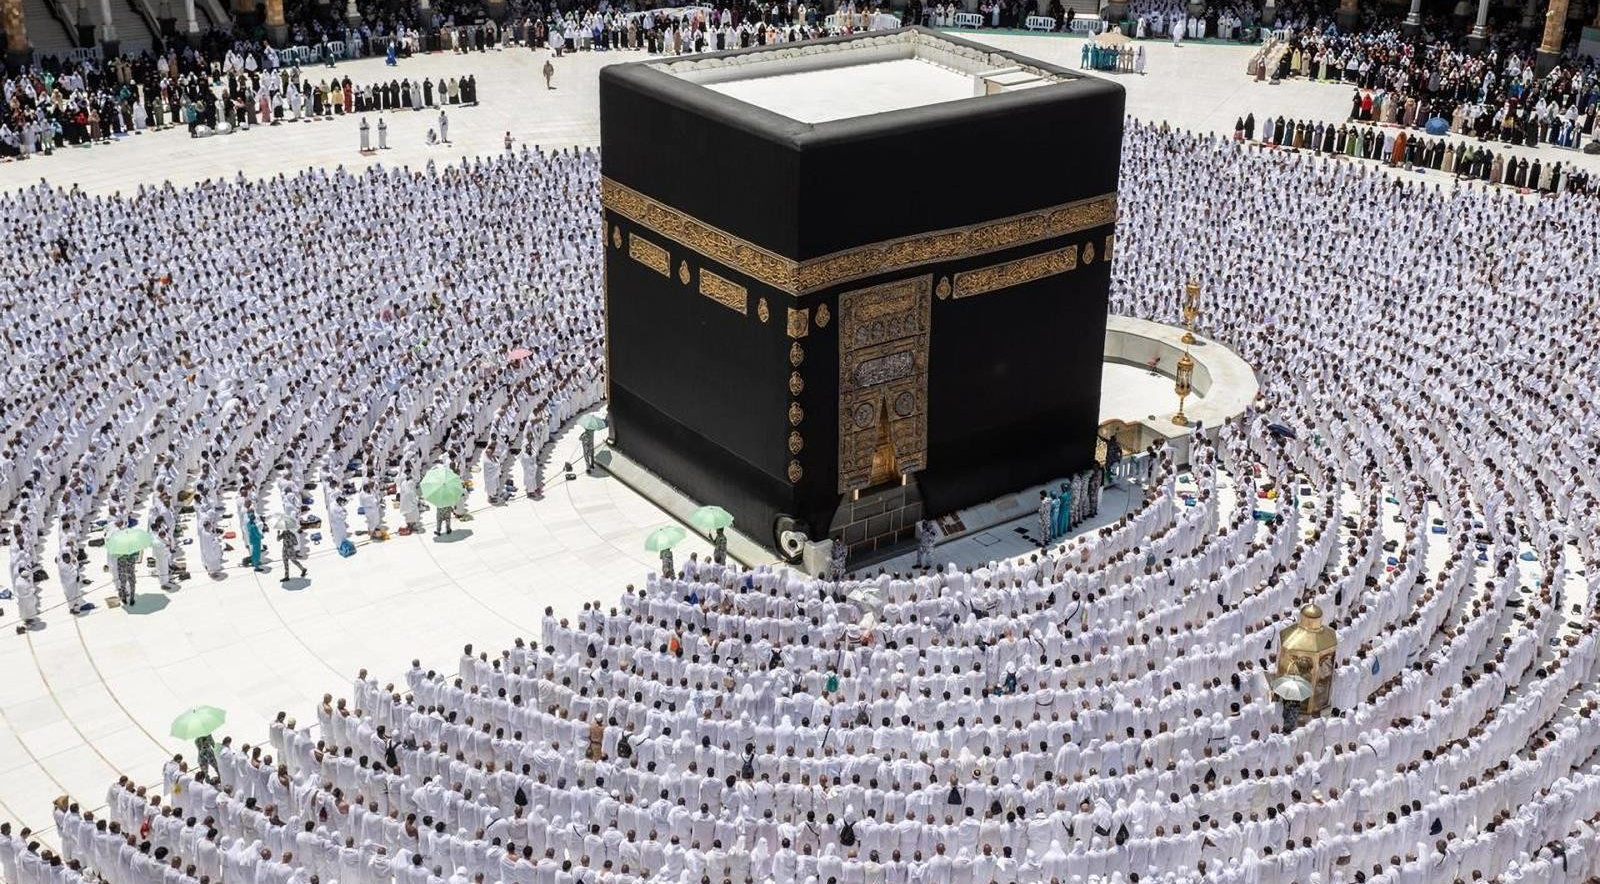 إمام المسجد الكبير في مكة ينصح المسلمين بالخوف من الله والعبادة له